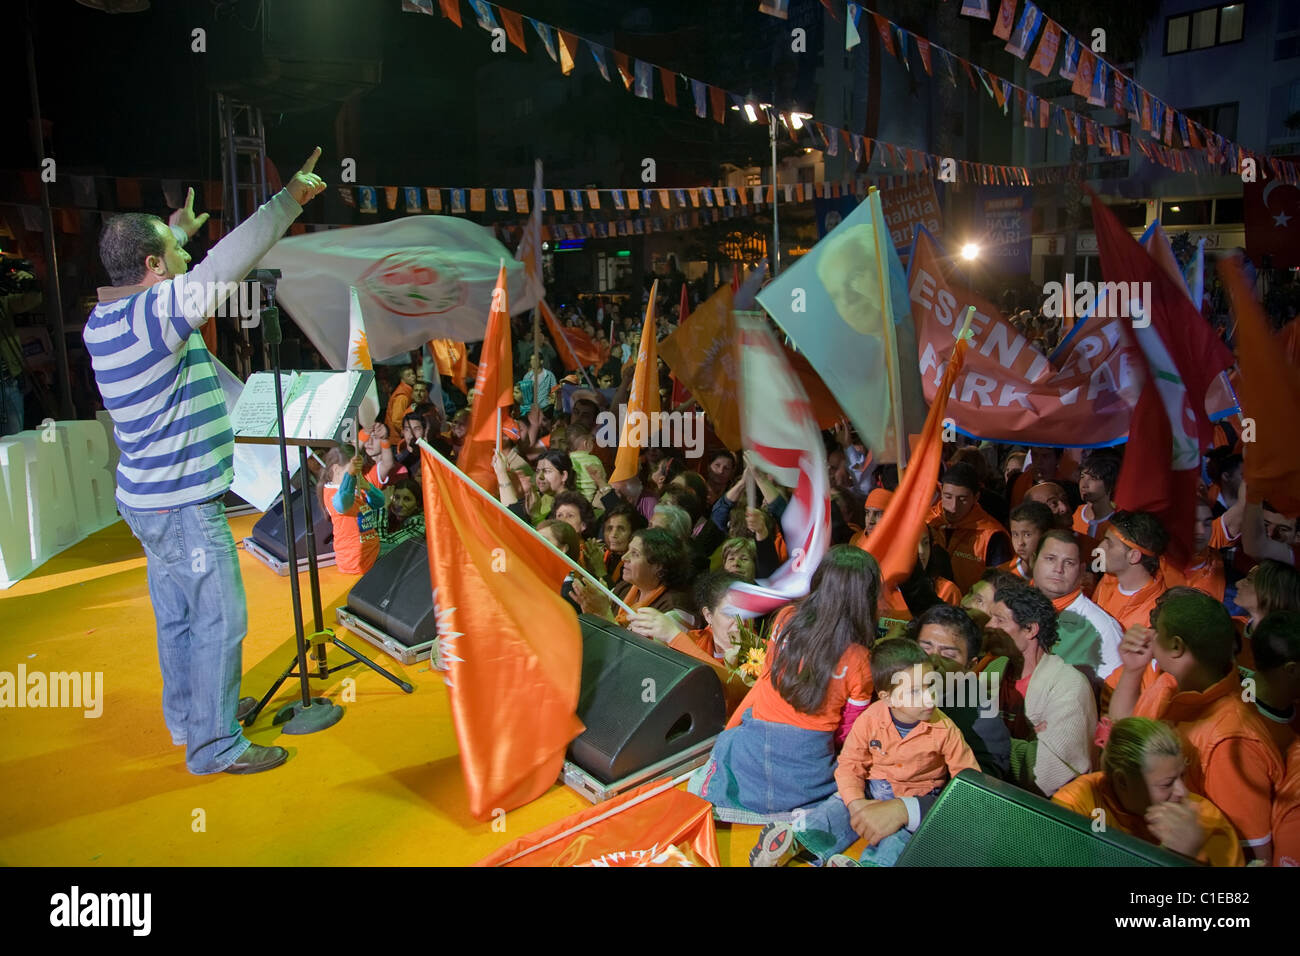 La performance sur scène lors de la campagne de l'UBP rallye, Kyrenia, République turque de Chypre du Nord Banque D'Images